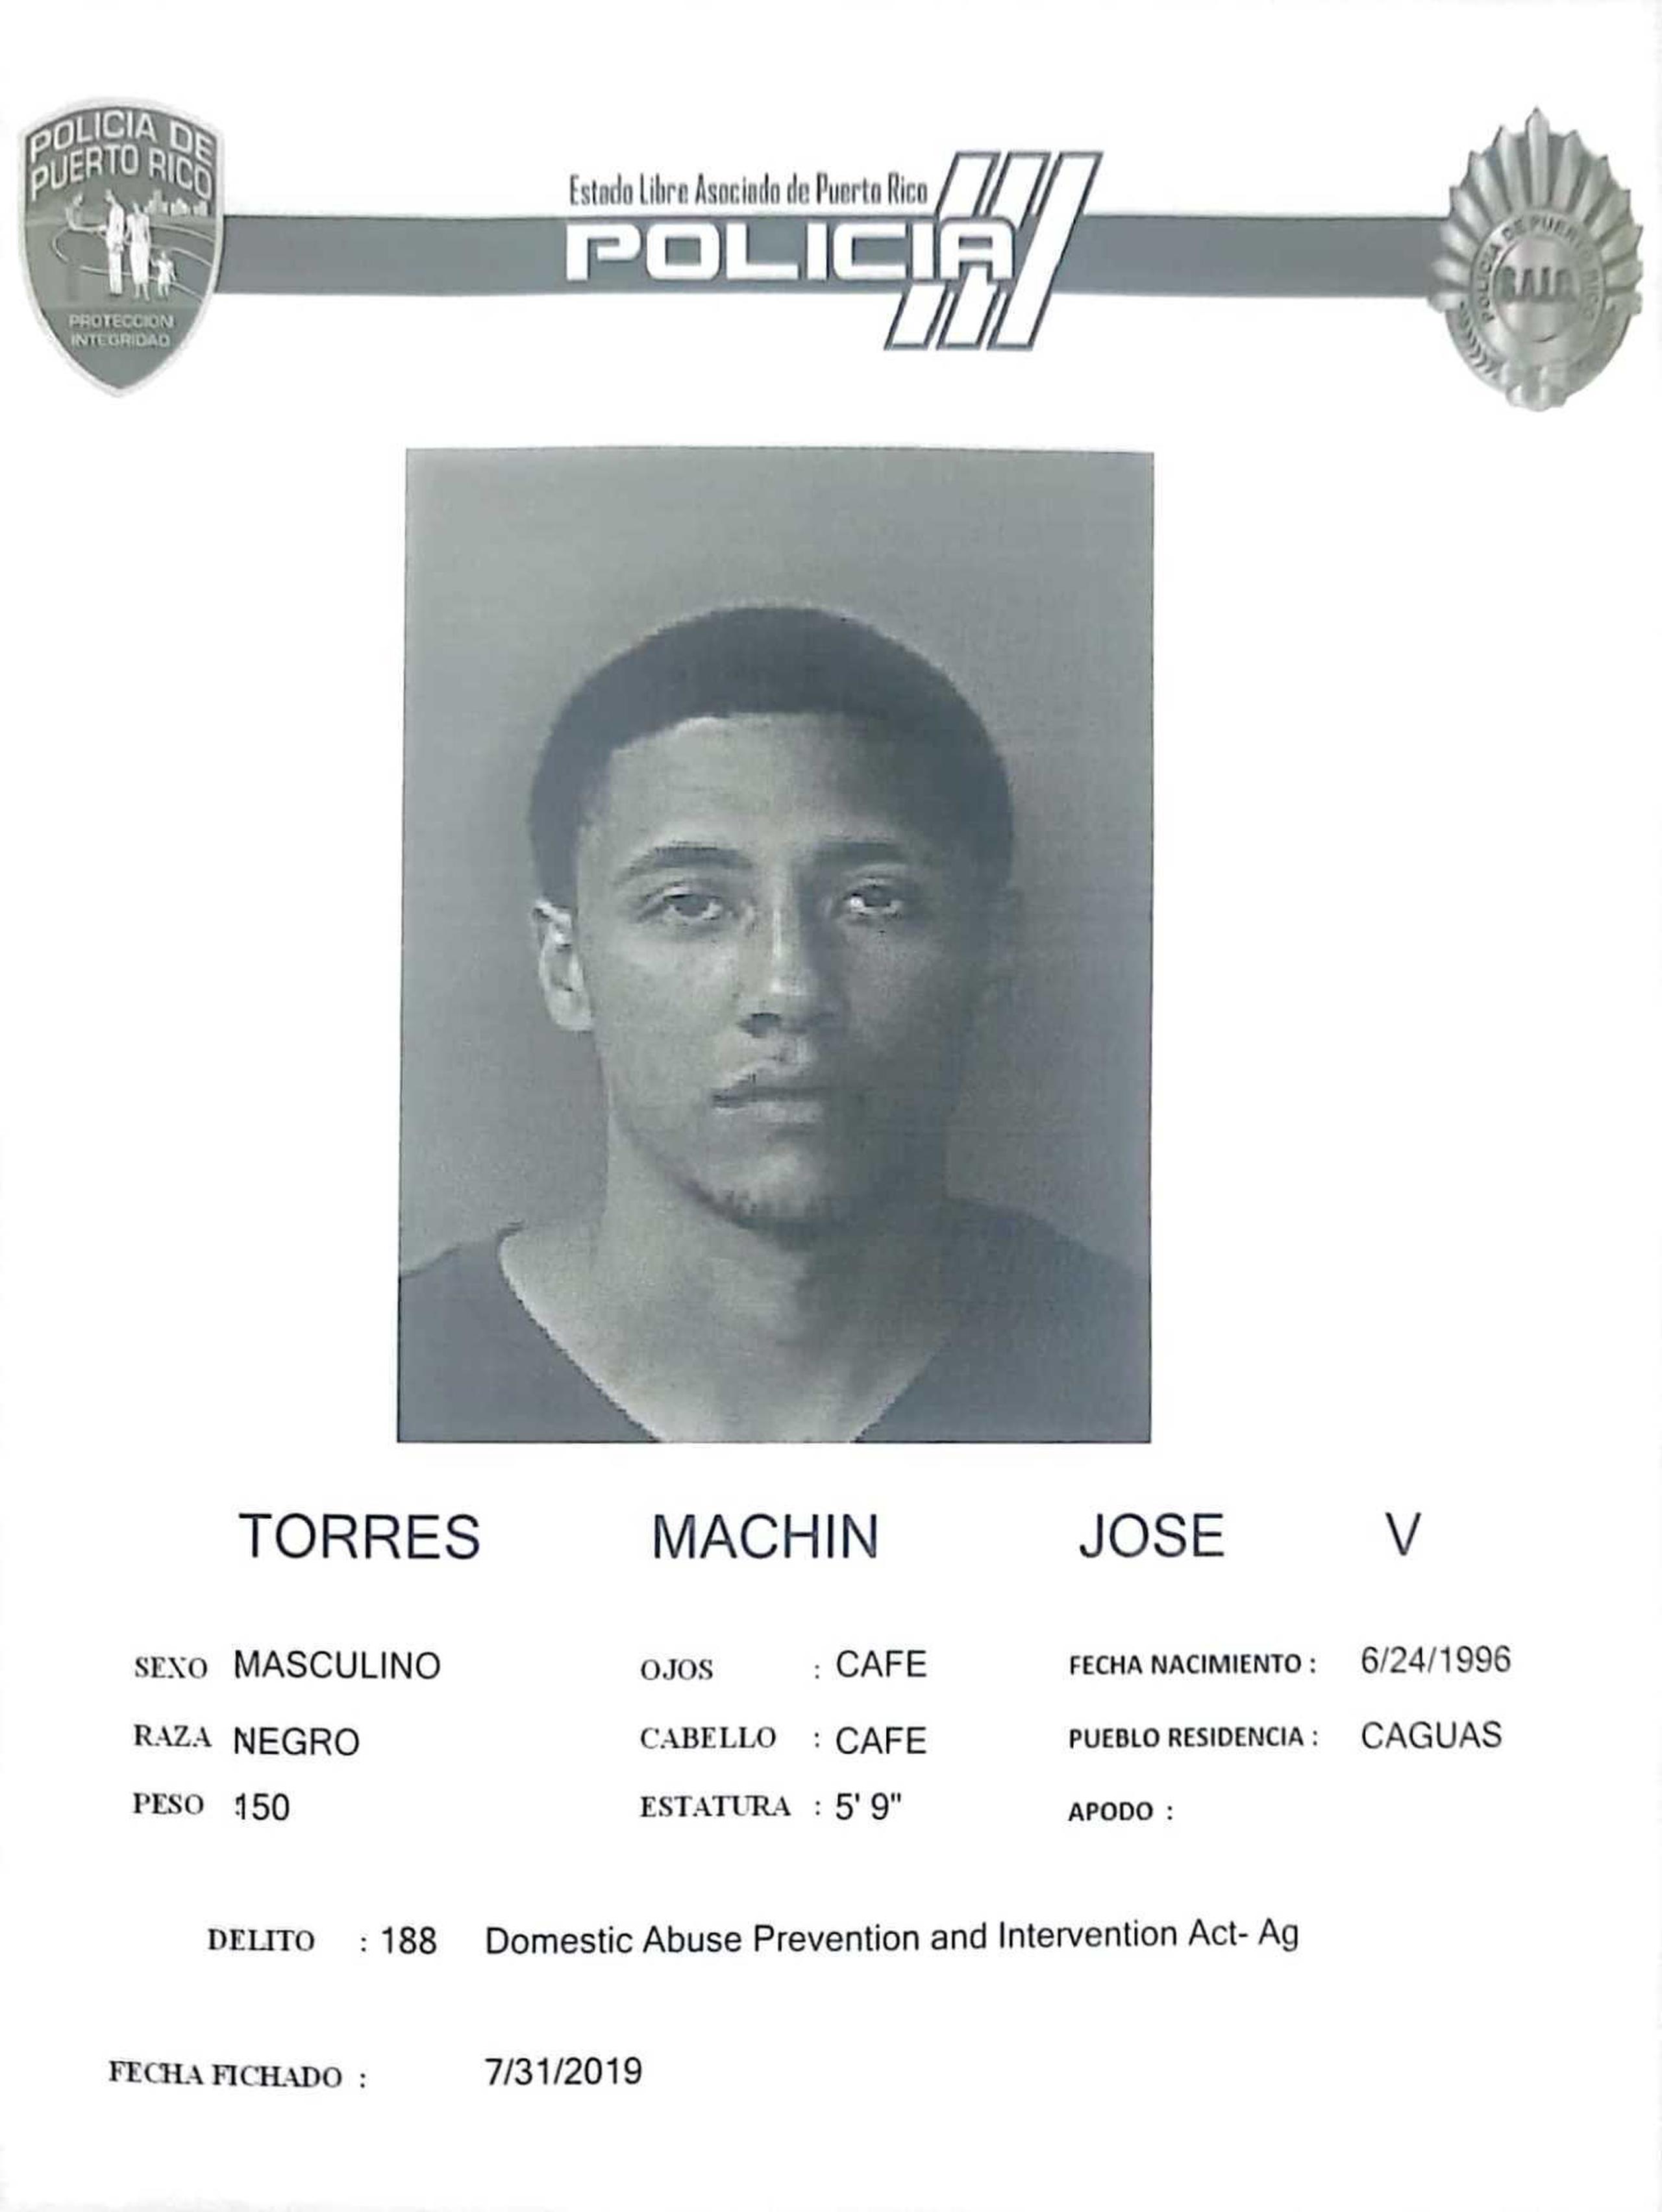 Ficha de José Torres Machín suministrada por el Negociado de Policía de Puerto Rico